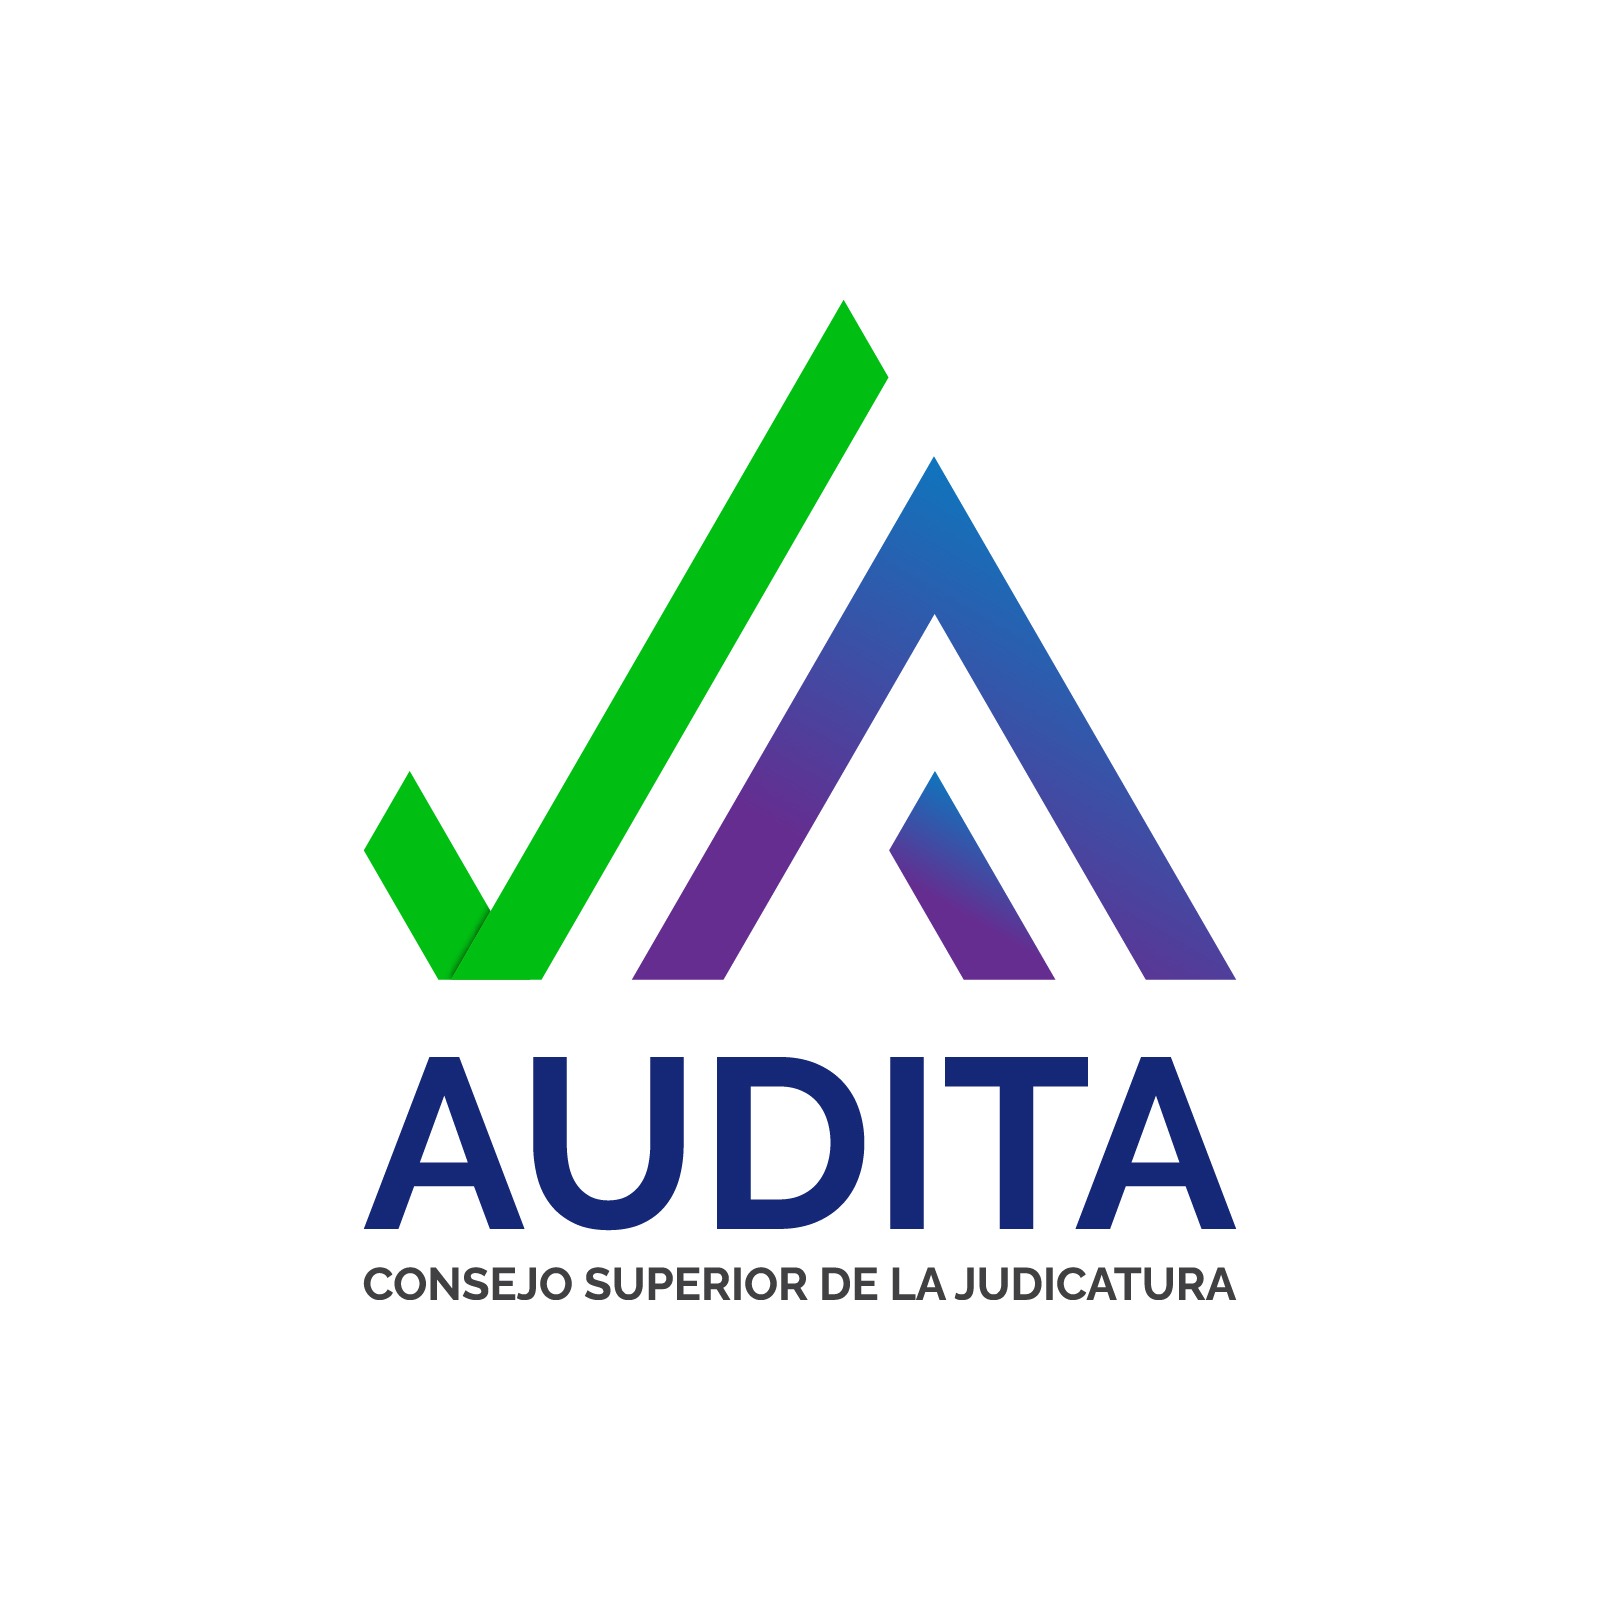 El Consejo Superior de la Judicatura y la Dirección Ejecutiva de Administración Judicial, ponen a disposición de la Unidad de Auditoría, el Sistema Automatizado para la Actividad de Auditoría Interna - AUDITA